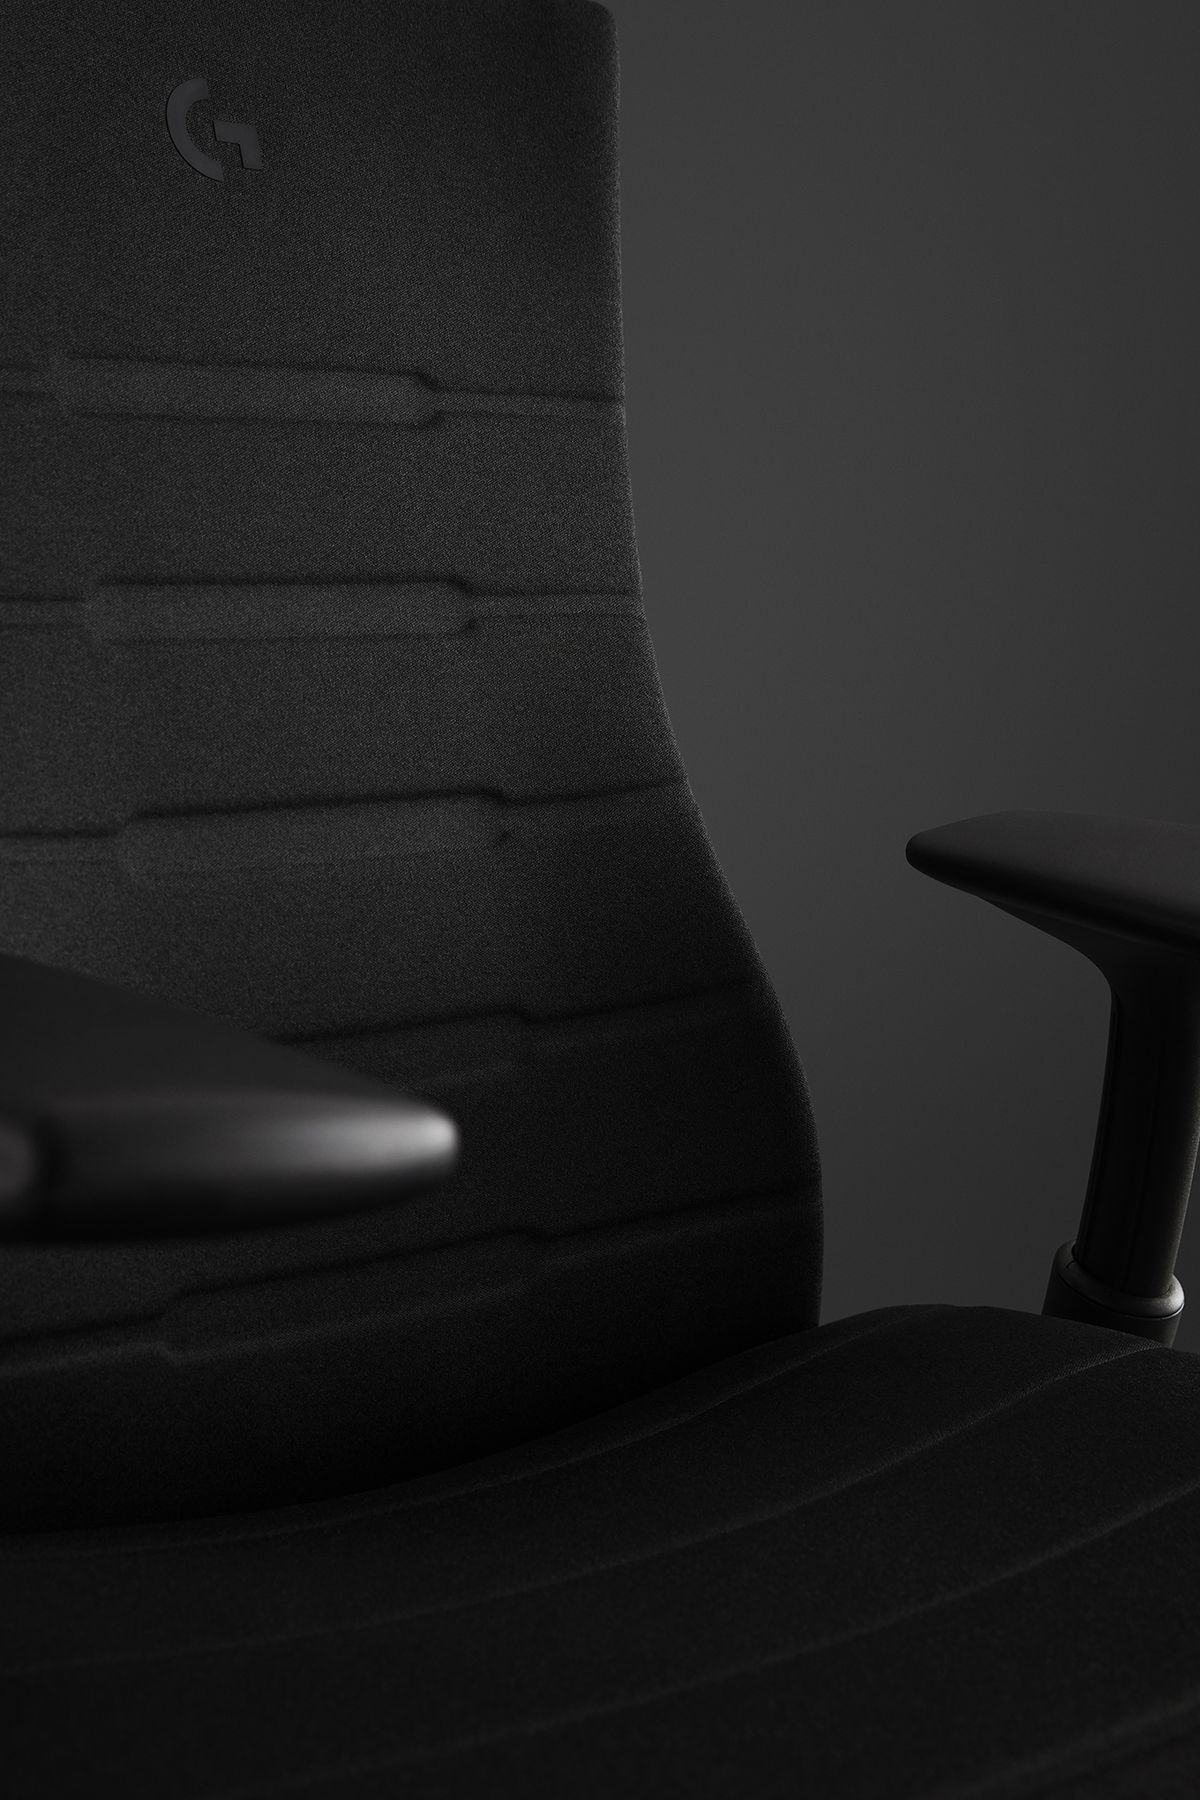 Un sedile nero con una G sullo schienale.